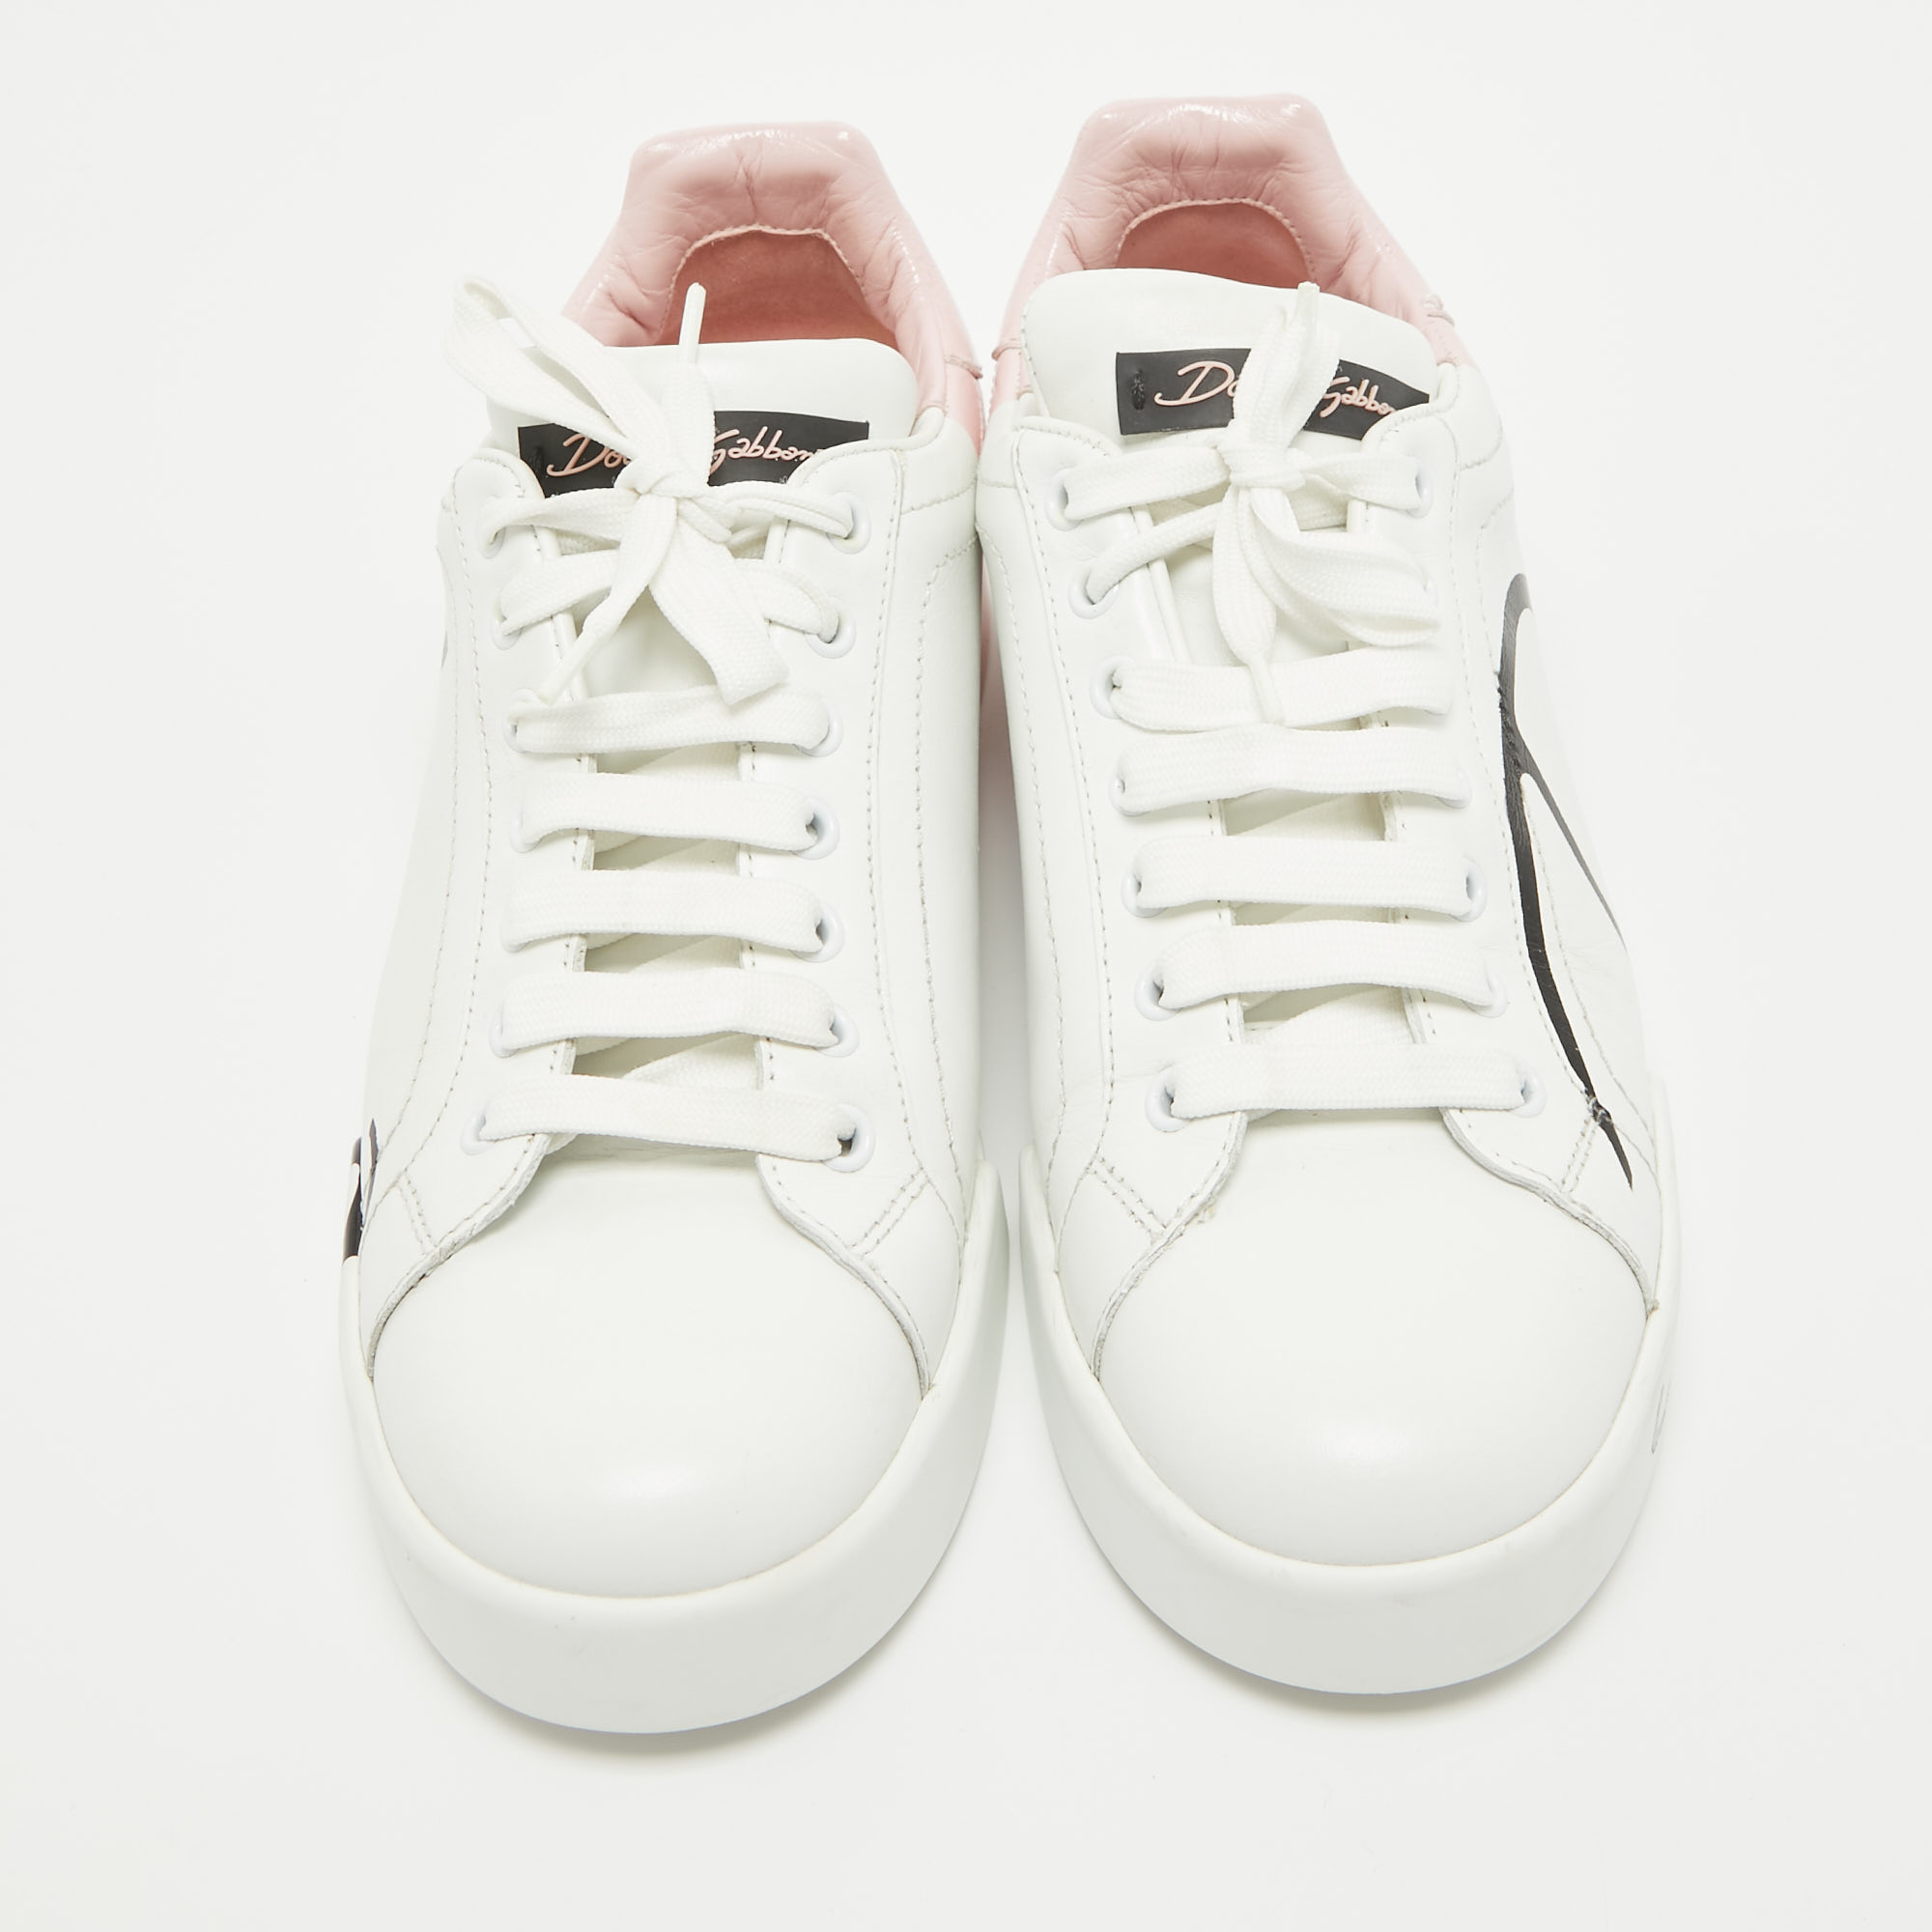 Dolce & Gabbana White/Mauve Leather Portofino Low Top Sneakers Size 39